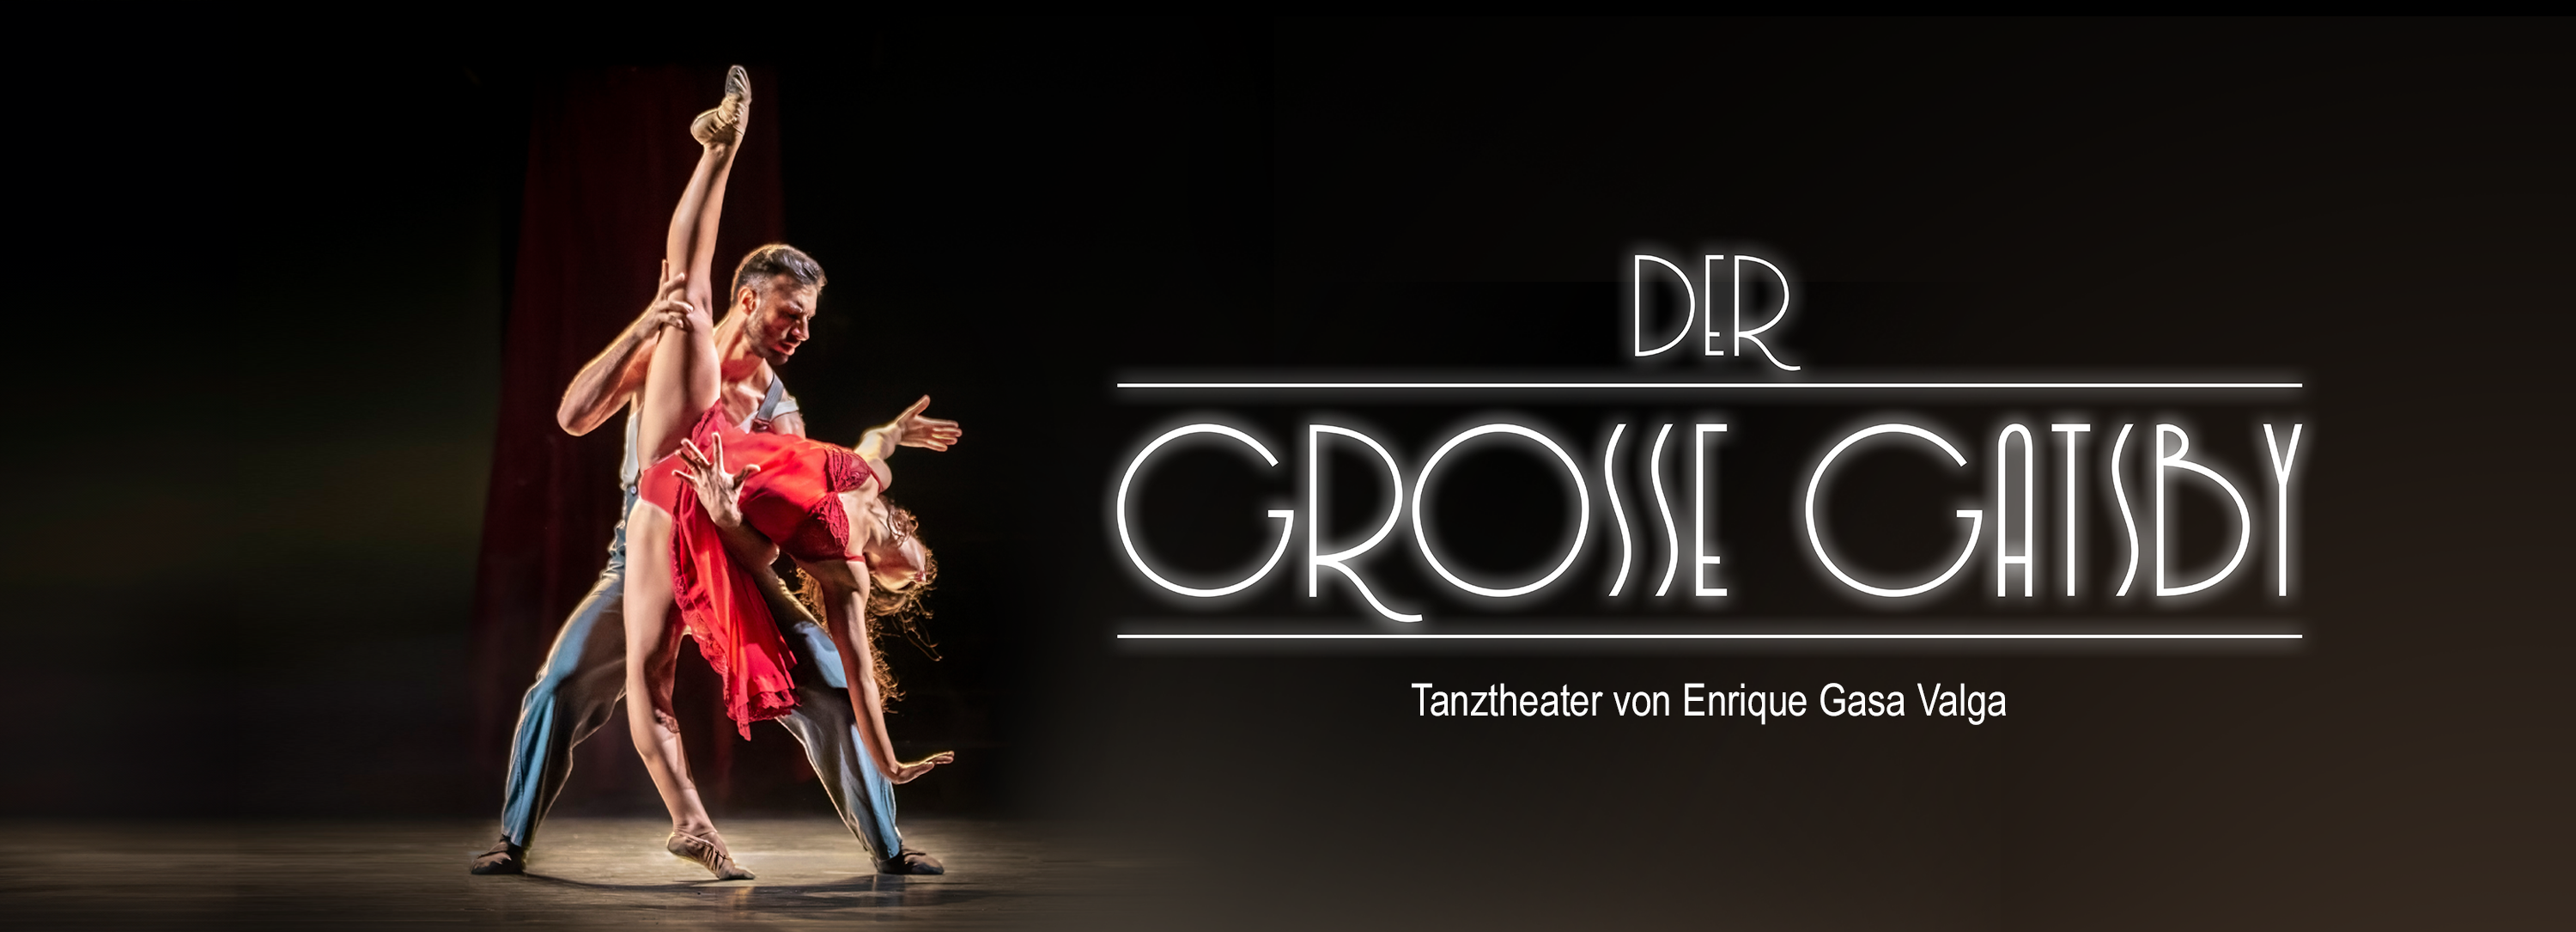 Der große Gatsby – Tanztheater von Enrique Gasa Valga im Deutschen Theater München